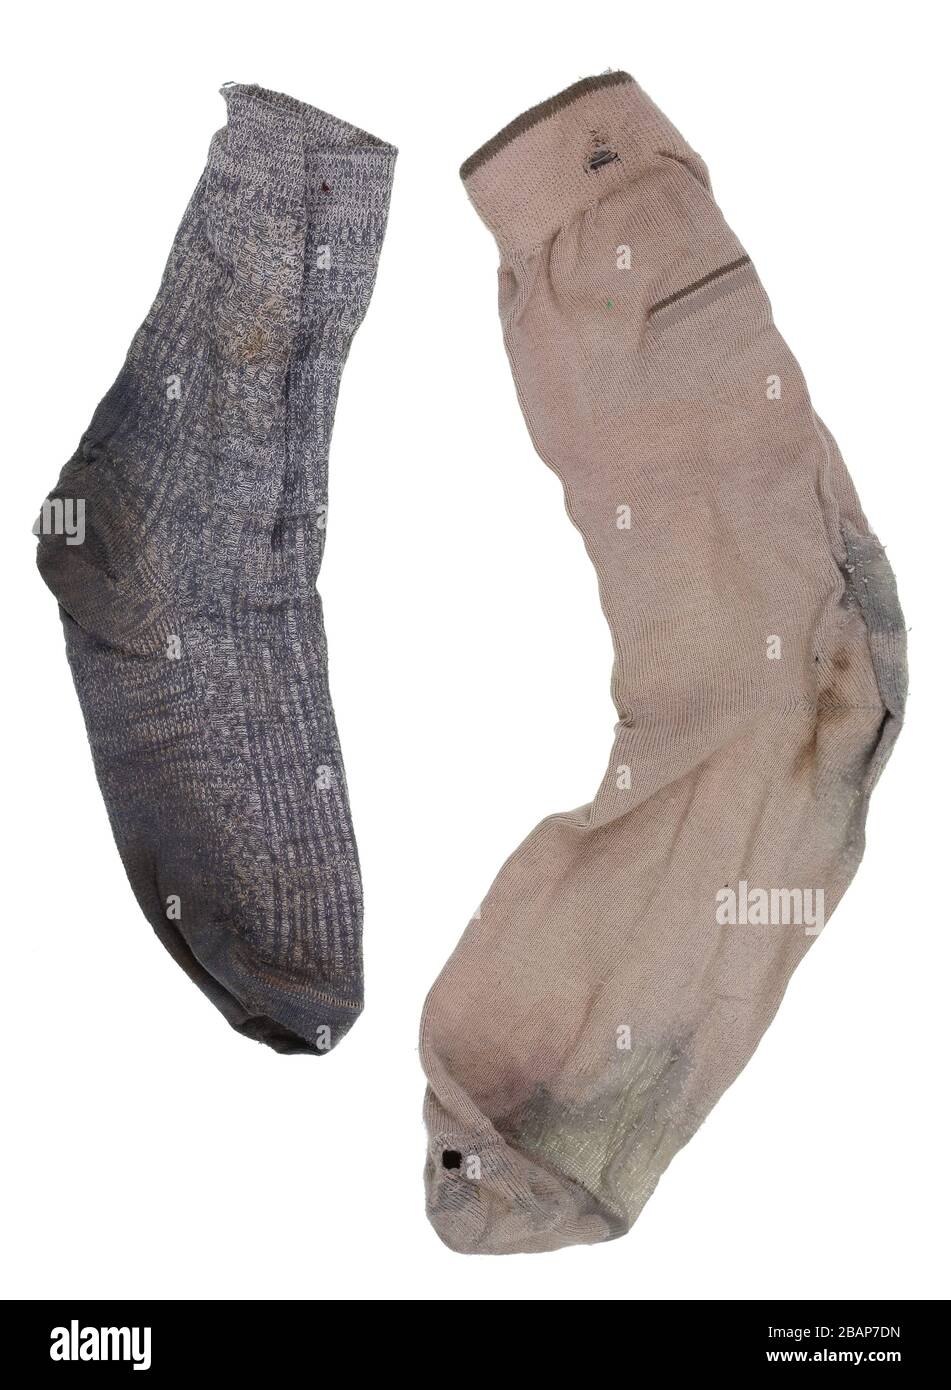 Yin und Yang, Männer und Frauen - zwei alte, zerlumpte, stinkende Socken  Stockfotografie - Alamy